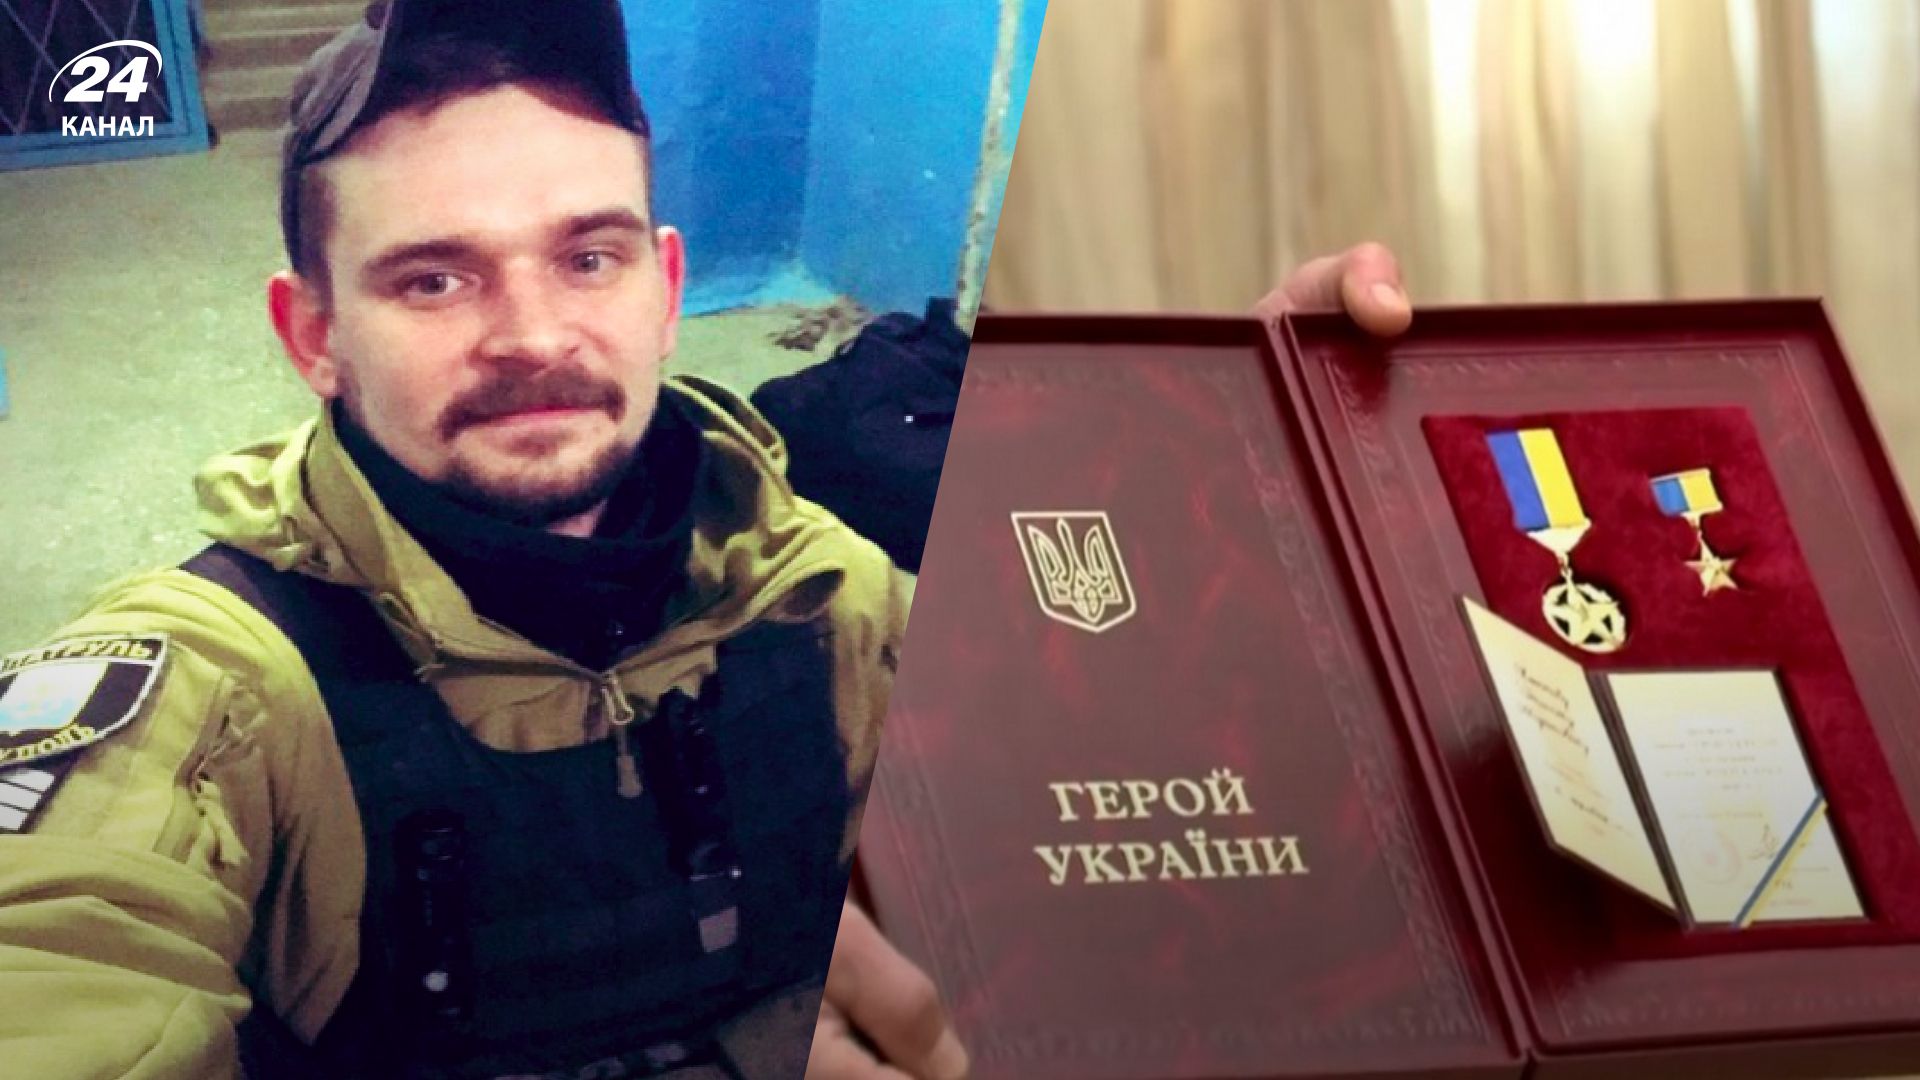 Даніїлу Сафонову можуть надати звання Героя: в ОП надіслали нагородні матеріали